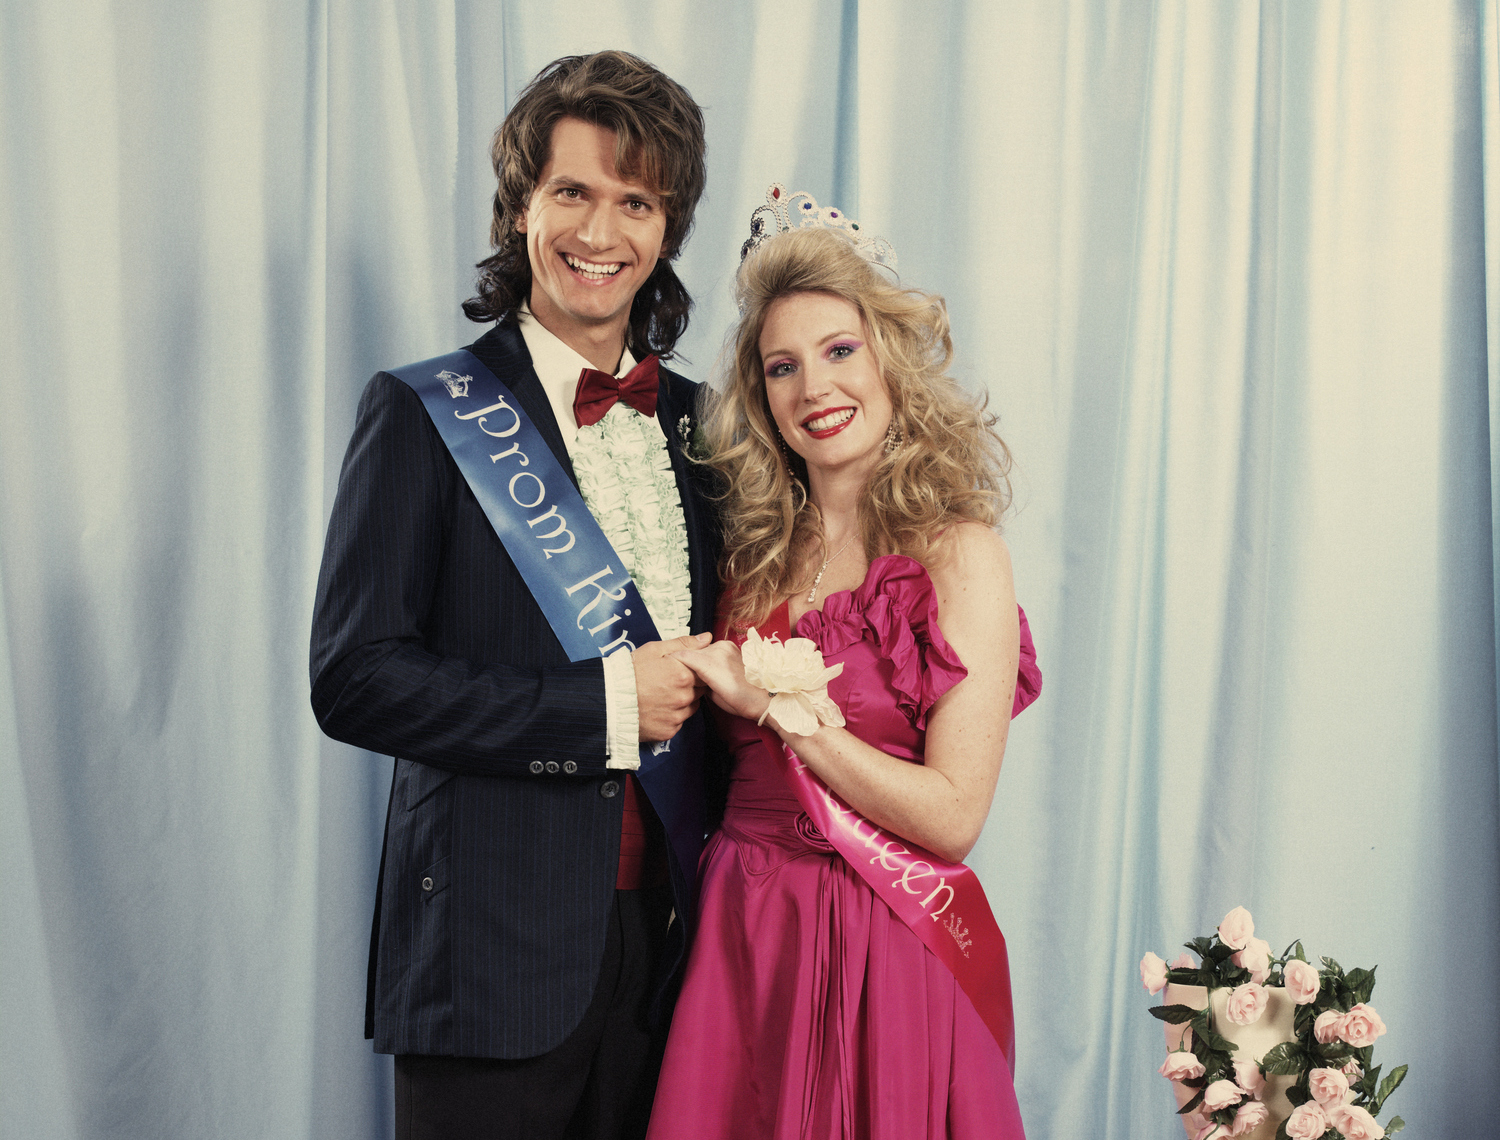 80's Retro Prom date